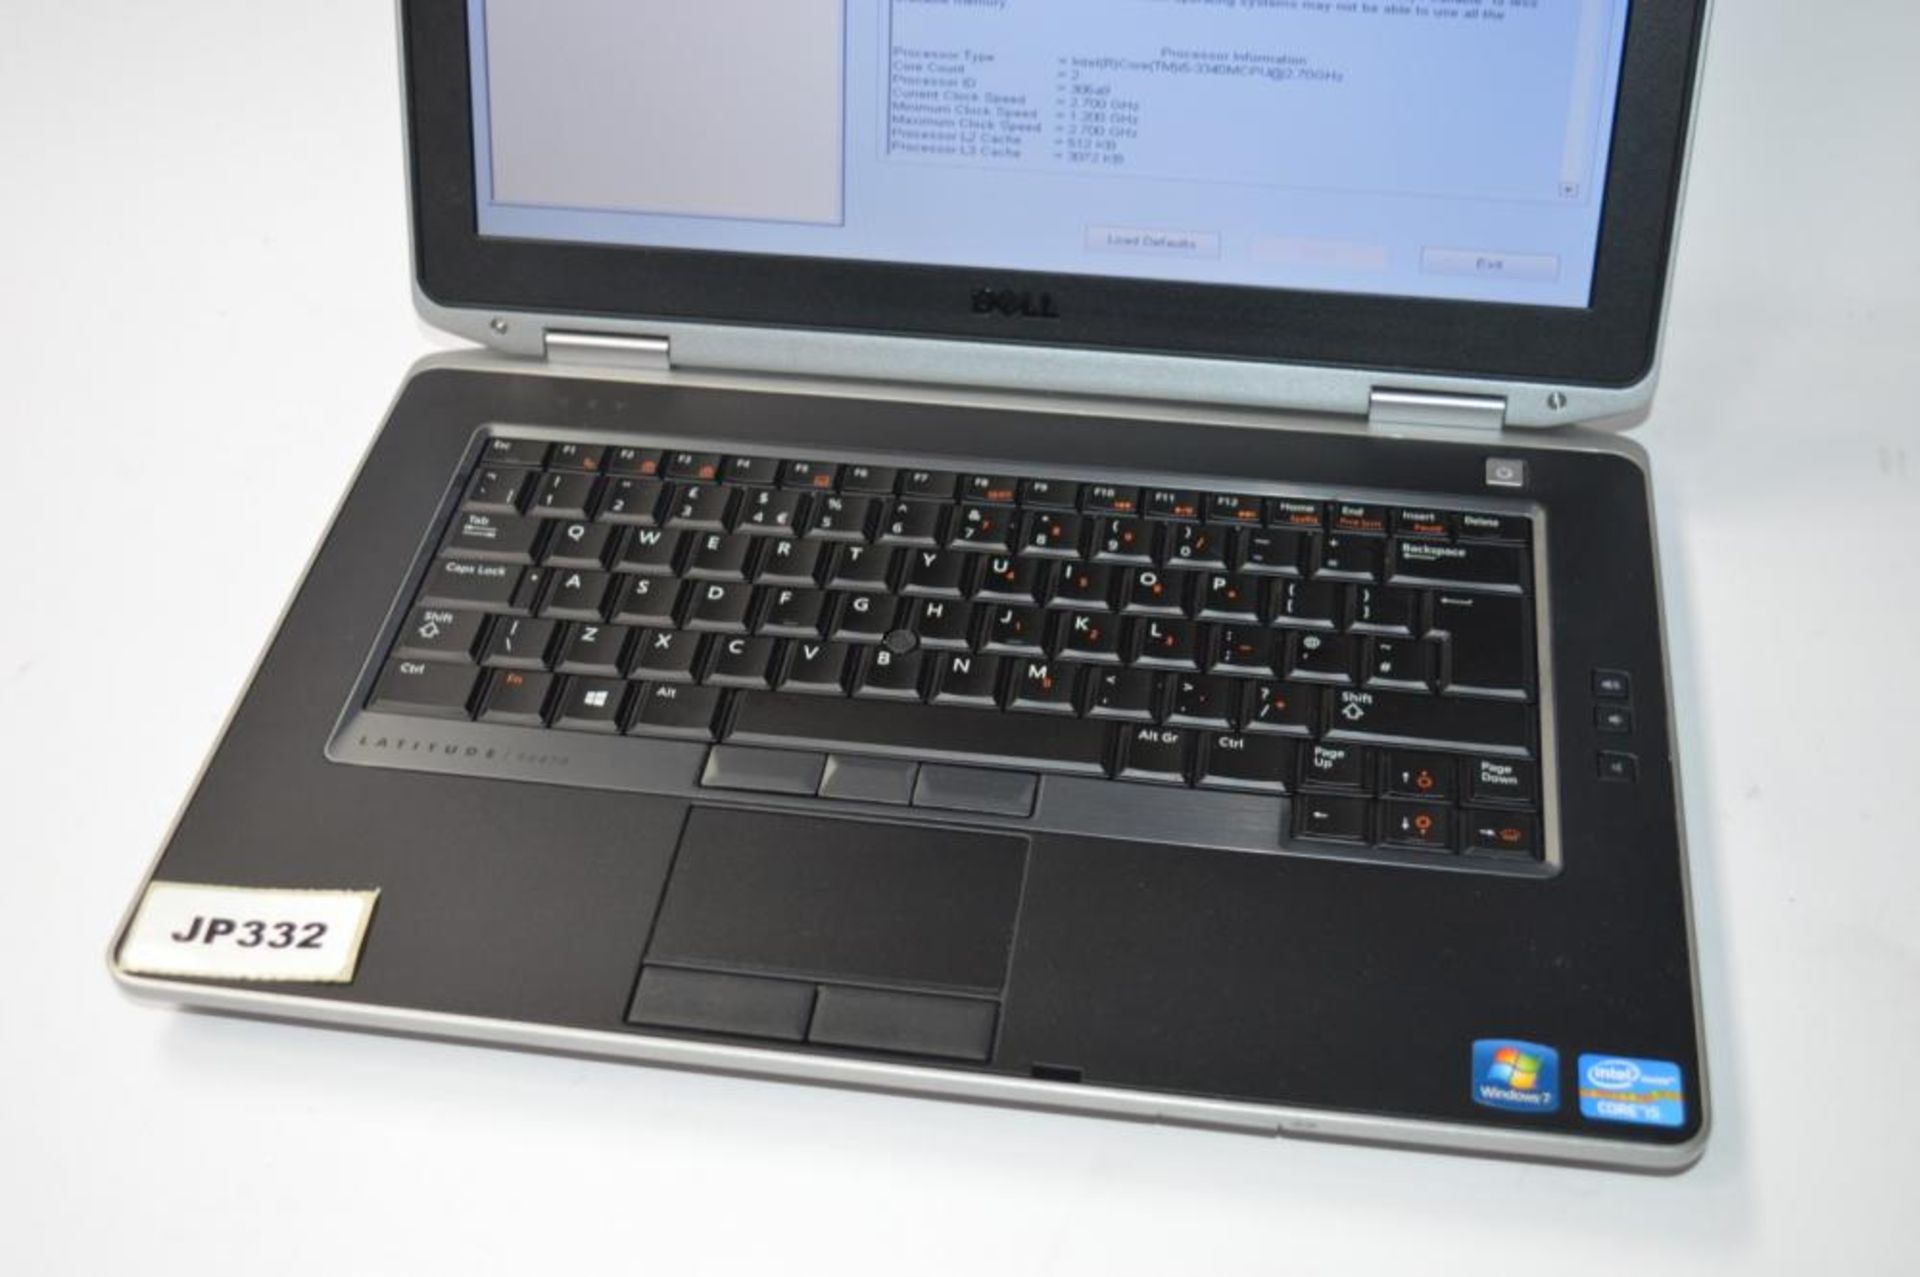 1 x Dell Latitude E6430 Laptop Computer - 14 Inch Screen - Features Intel Core i5 2.6ghz Processor a - Bild 3 aus 4